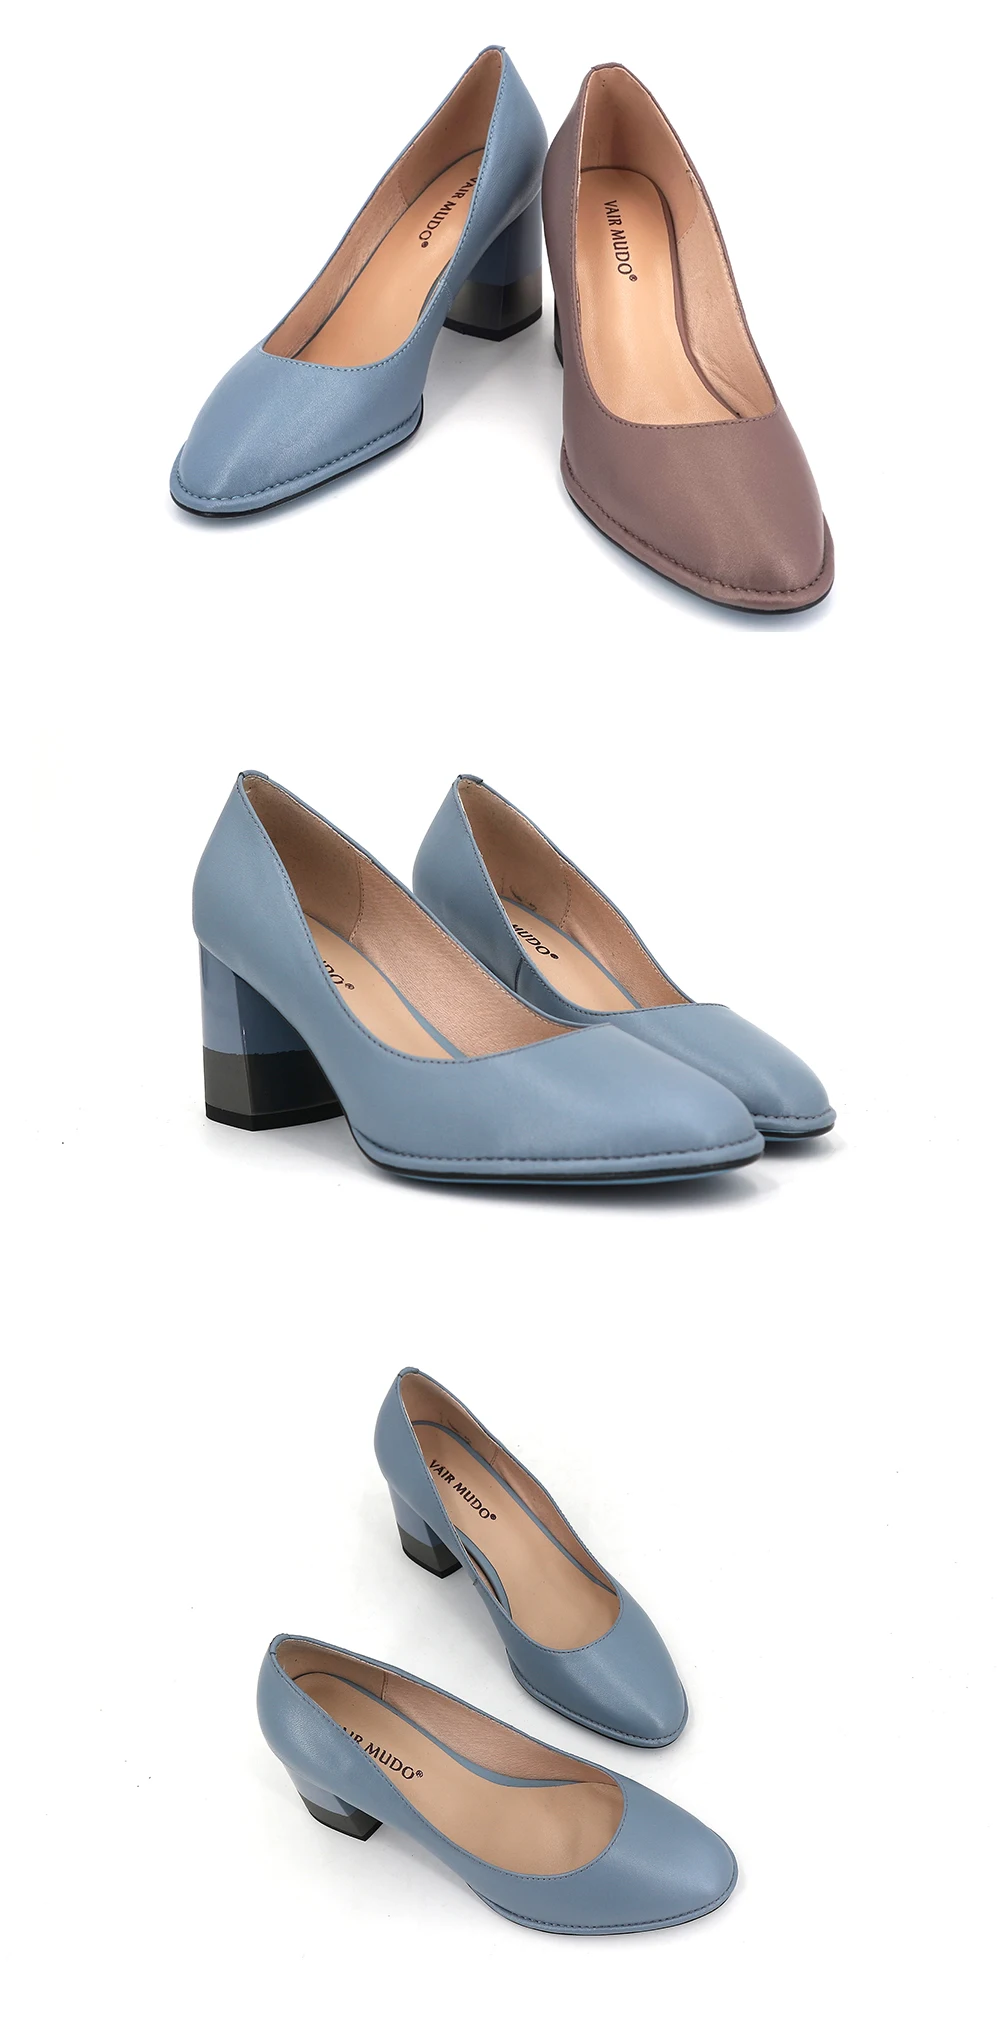 VAIR MUDO/ г. Новые женские туфли-лодочки женская повседневная обувь синего цвета из натуральной кожи на высоком каблуке, без шнуровки, женская обувь на толстом каблуке, D106